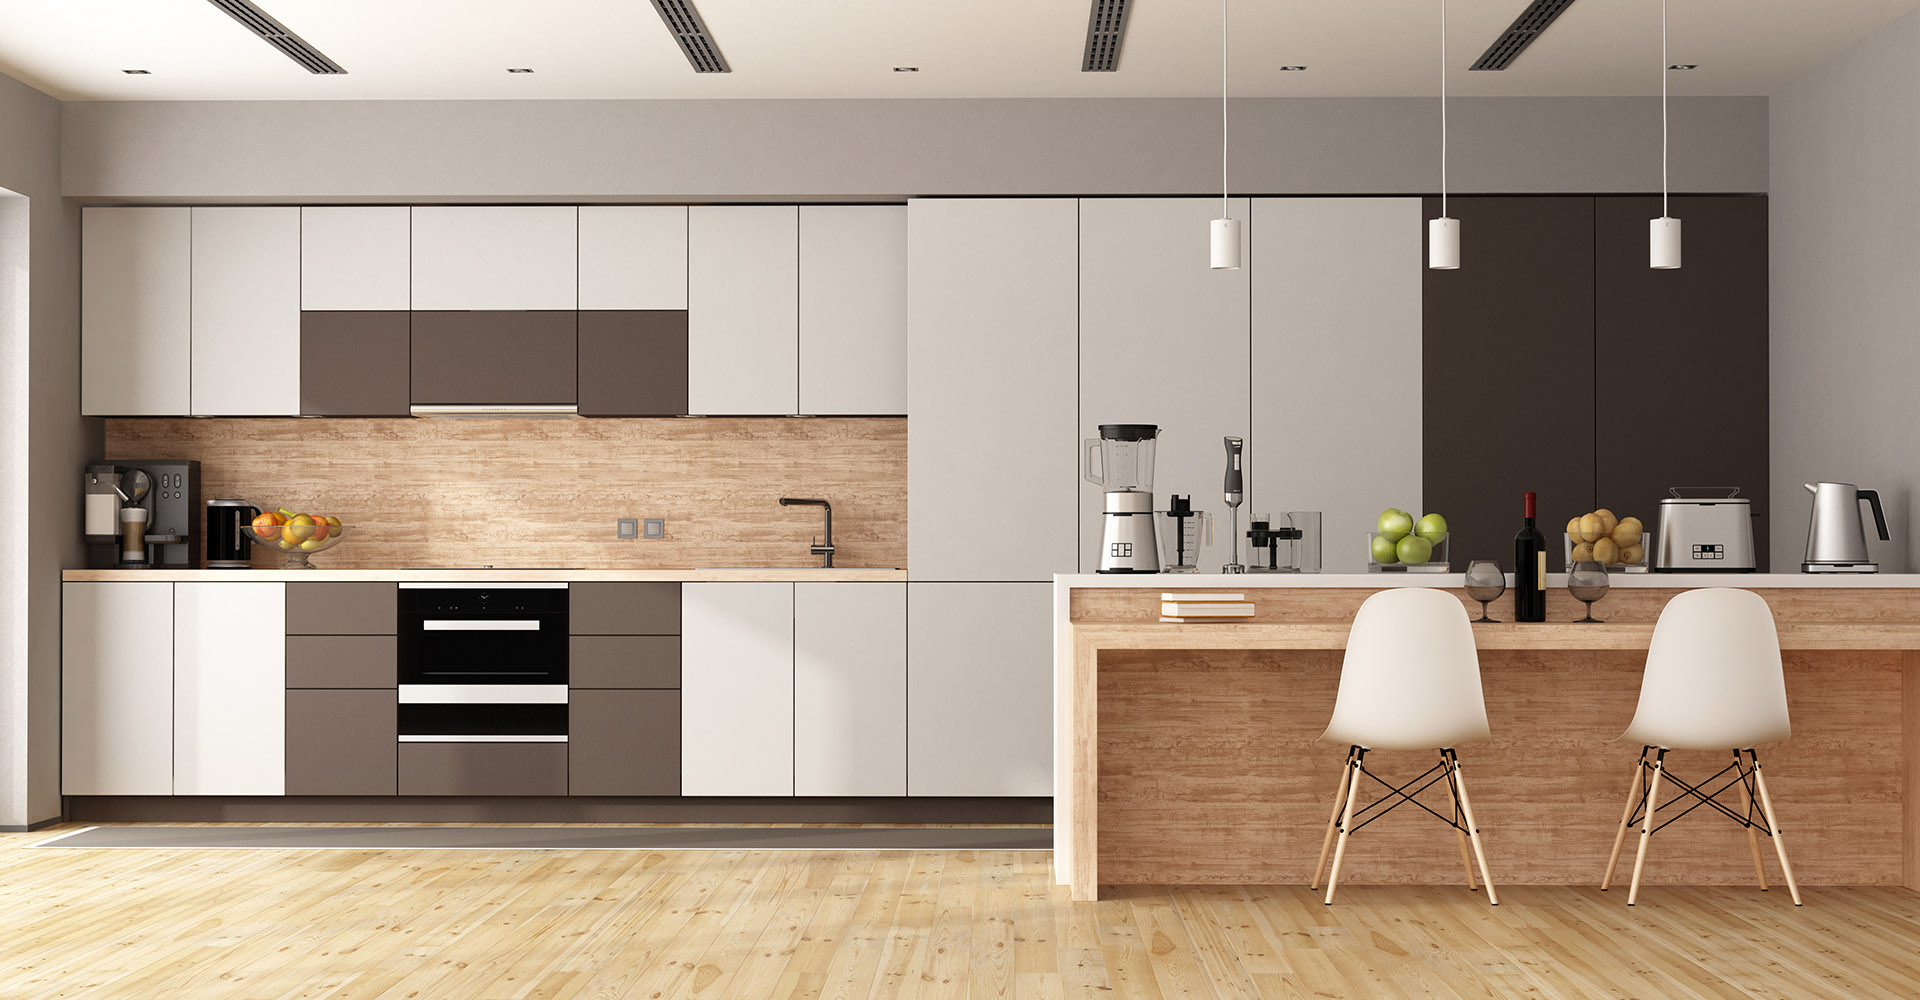 kitchen interior design image free download